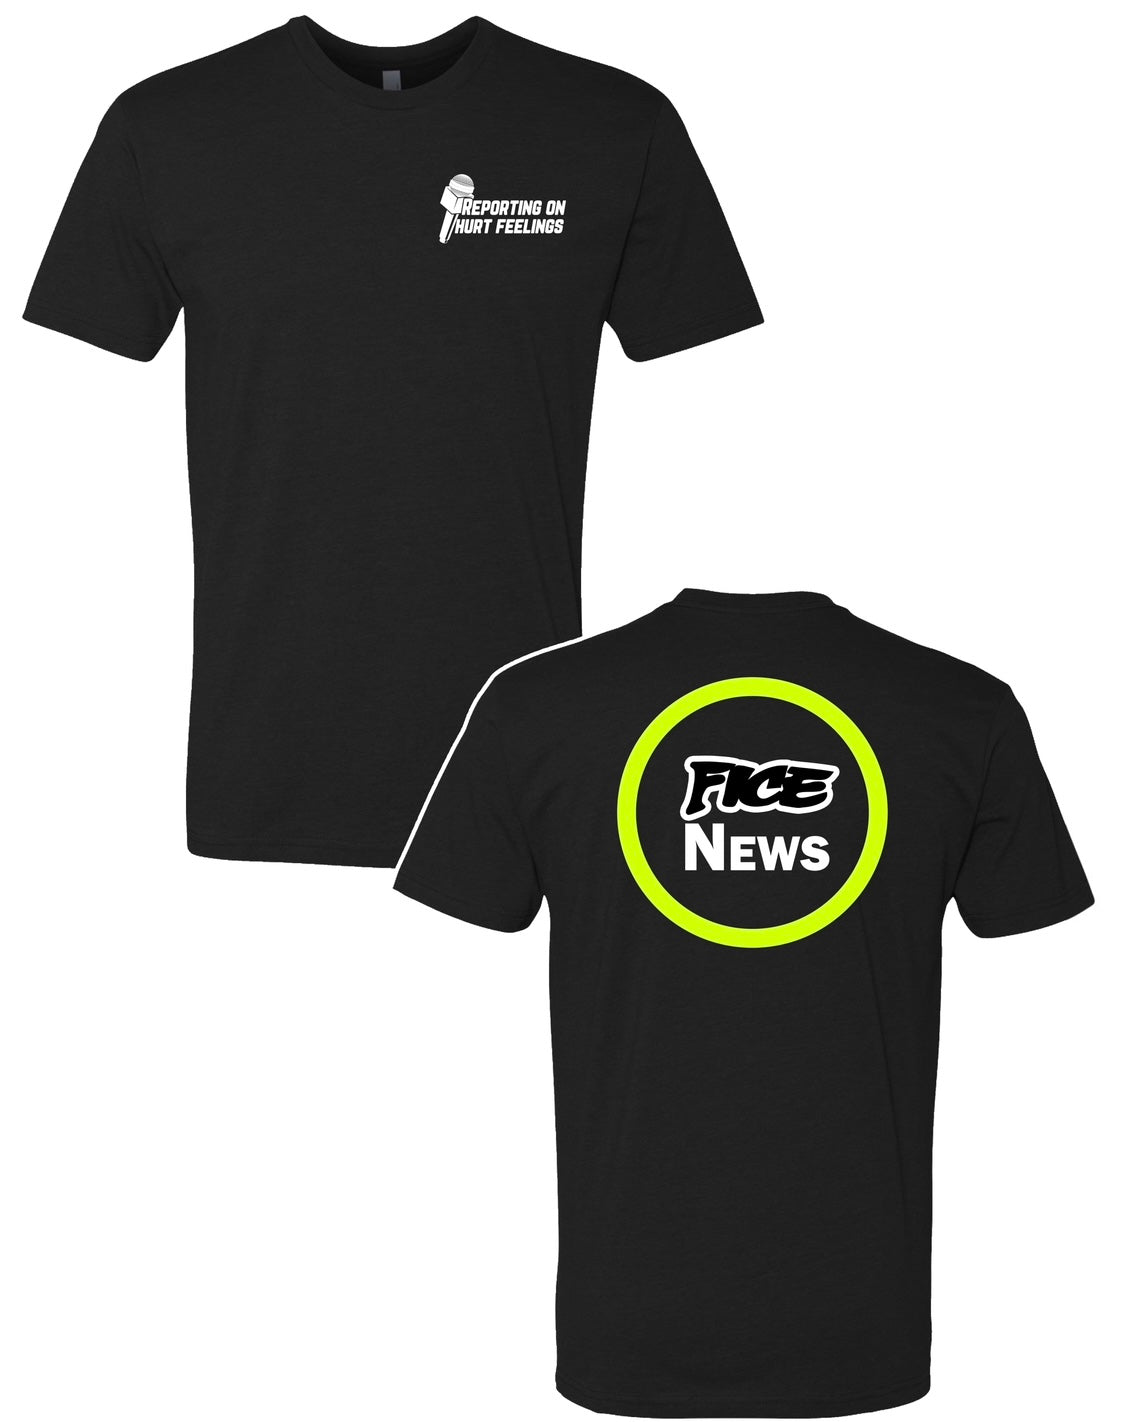 “Fice News” t-shirt